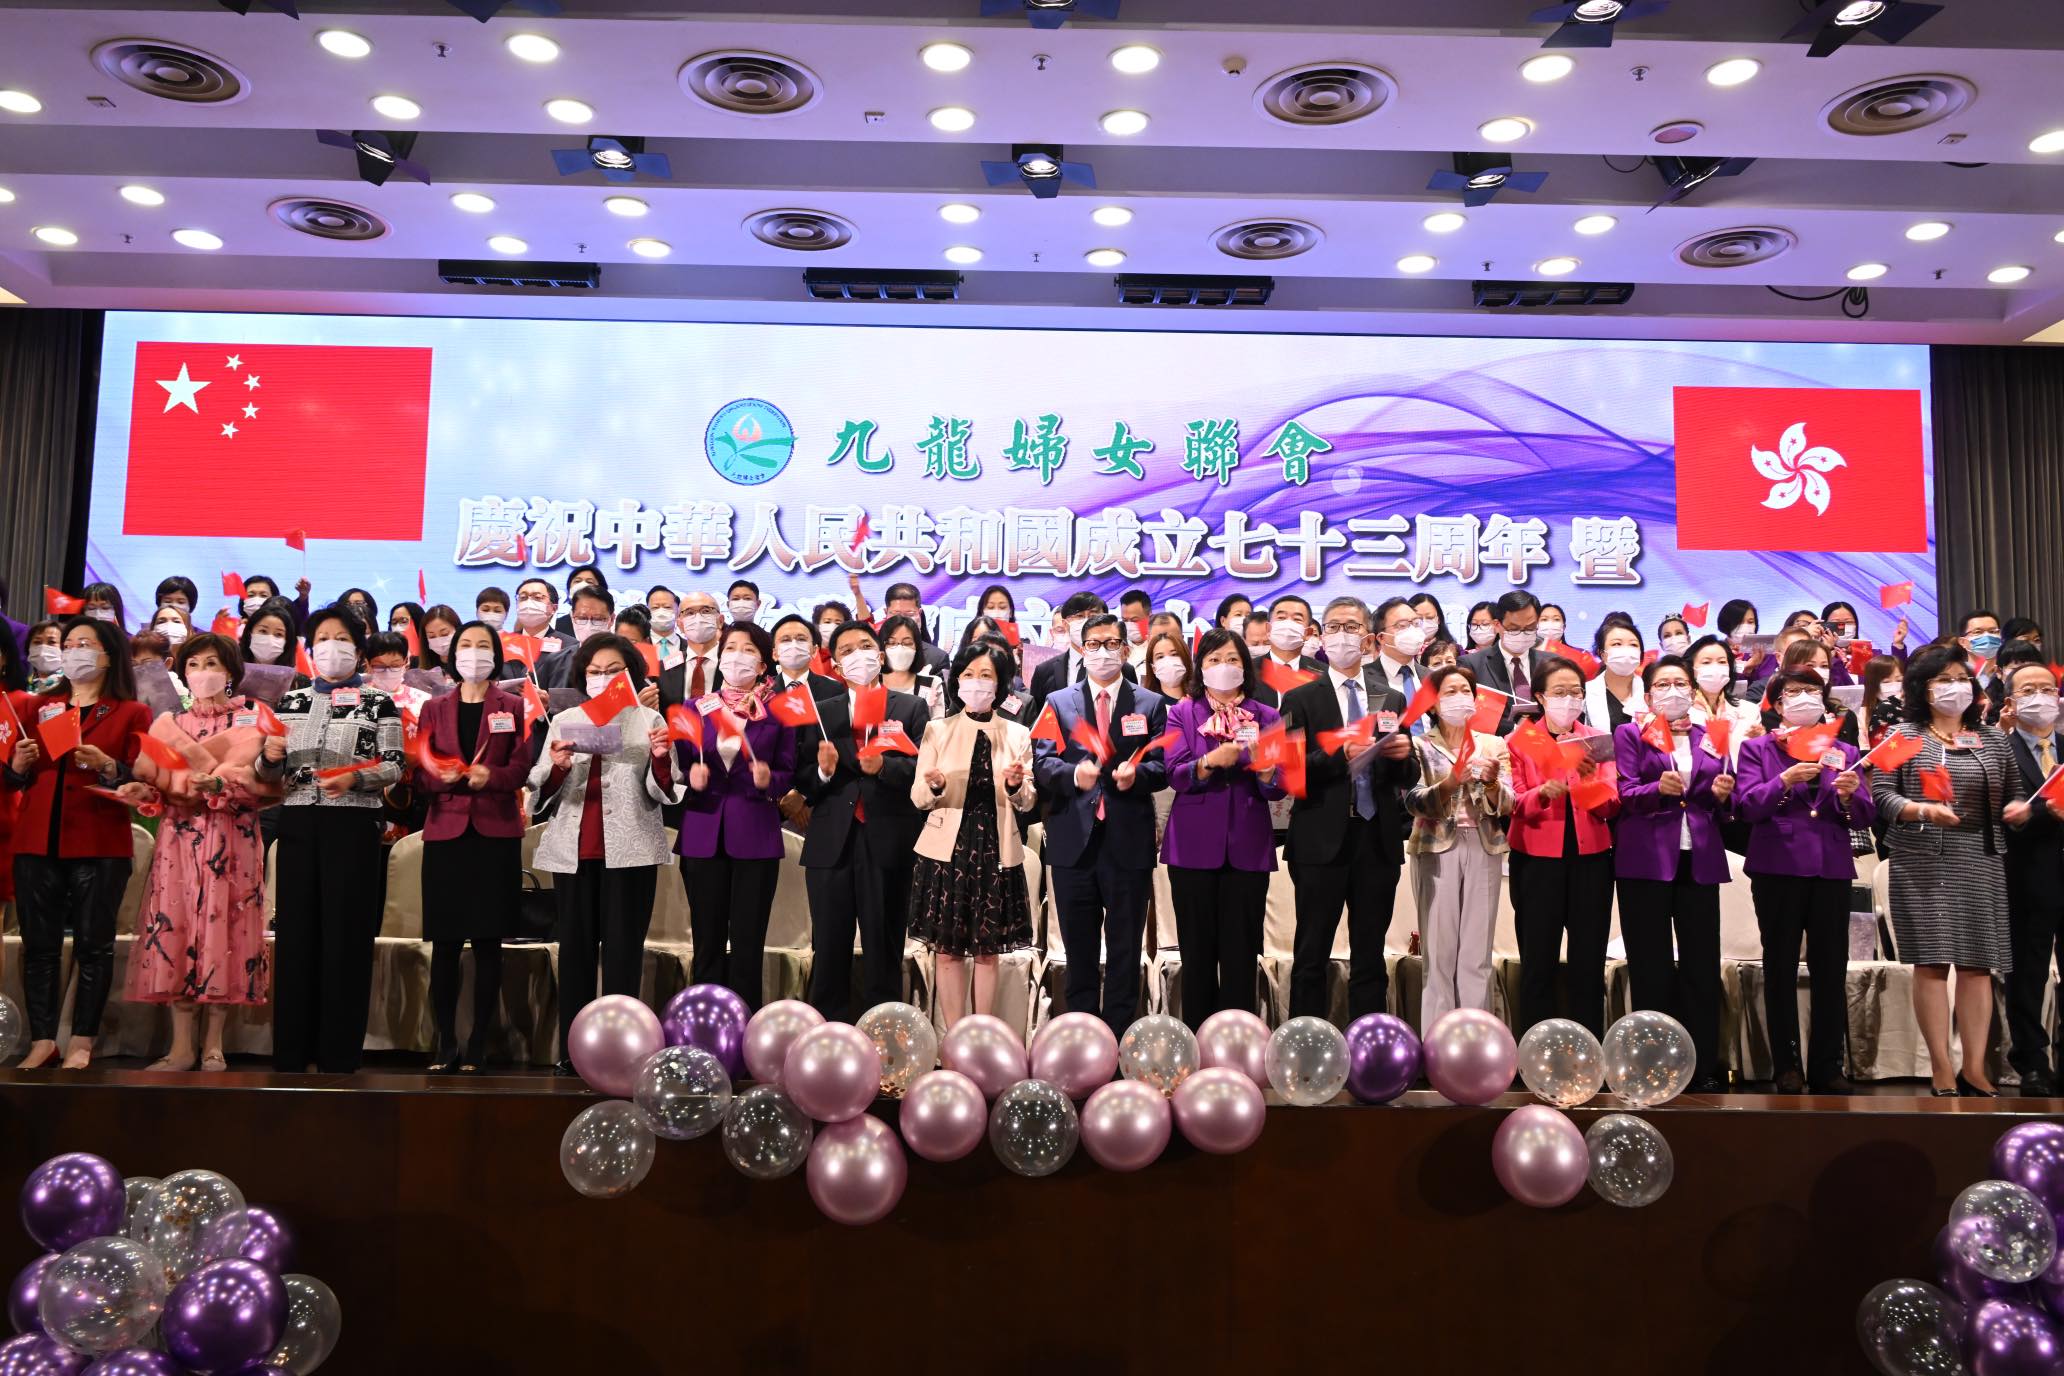 九龍婦女聯會辦成立二十二周年典禮